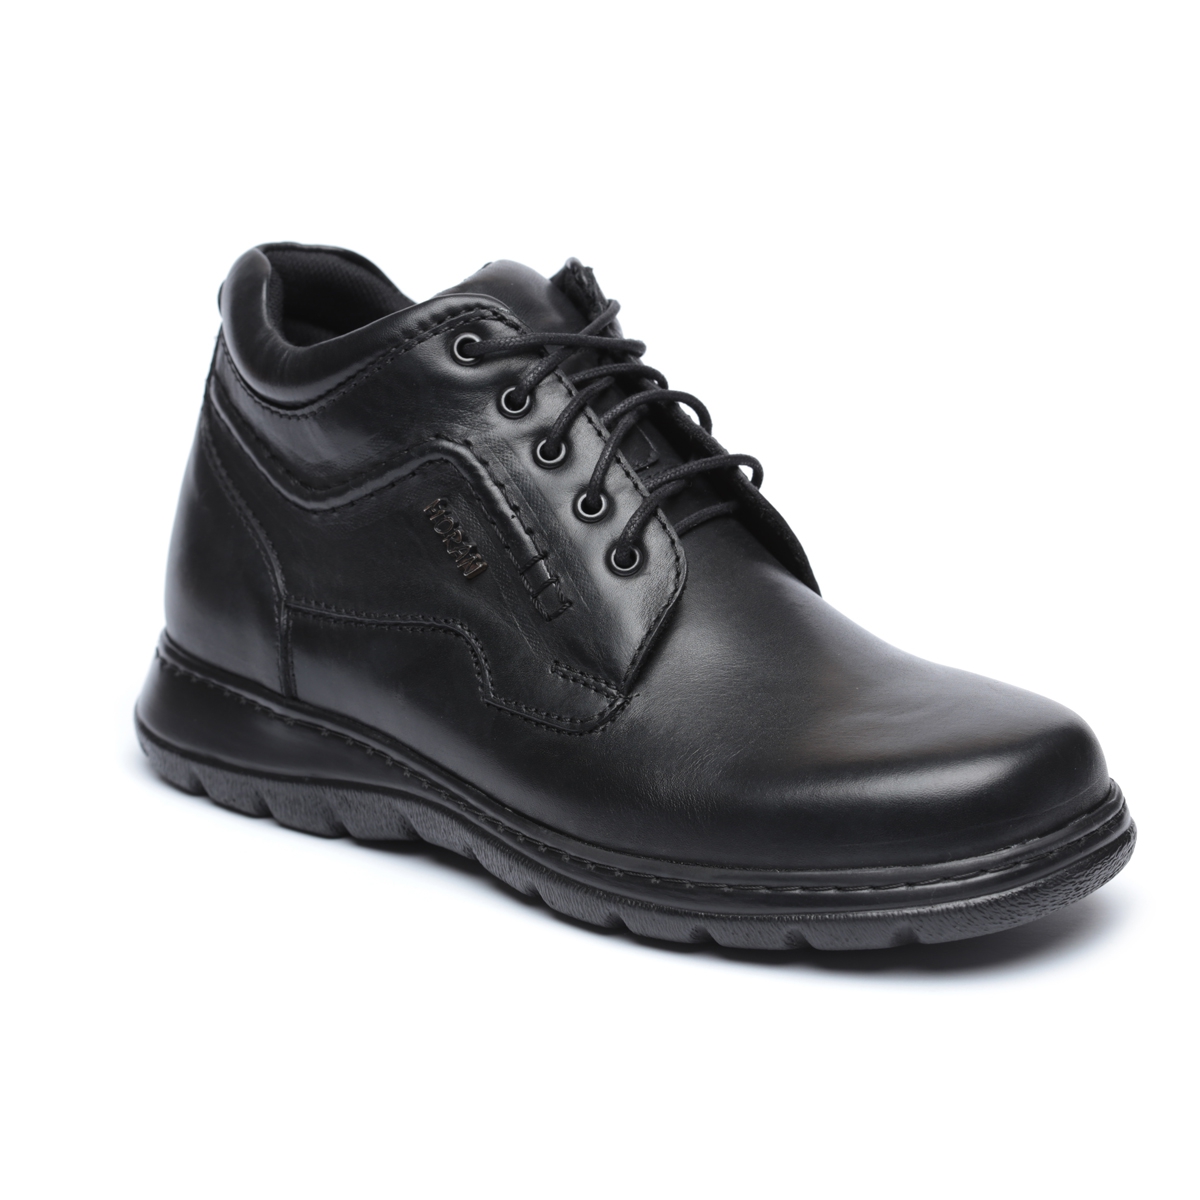 נעלי נוחות לגברים מדגם יובל בצבע שחור